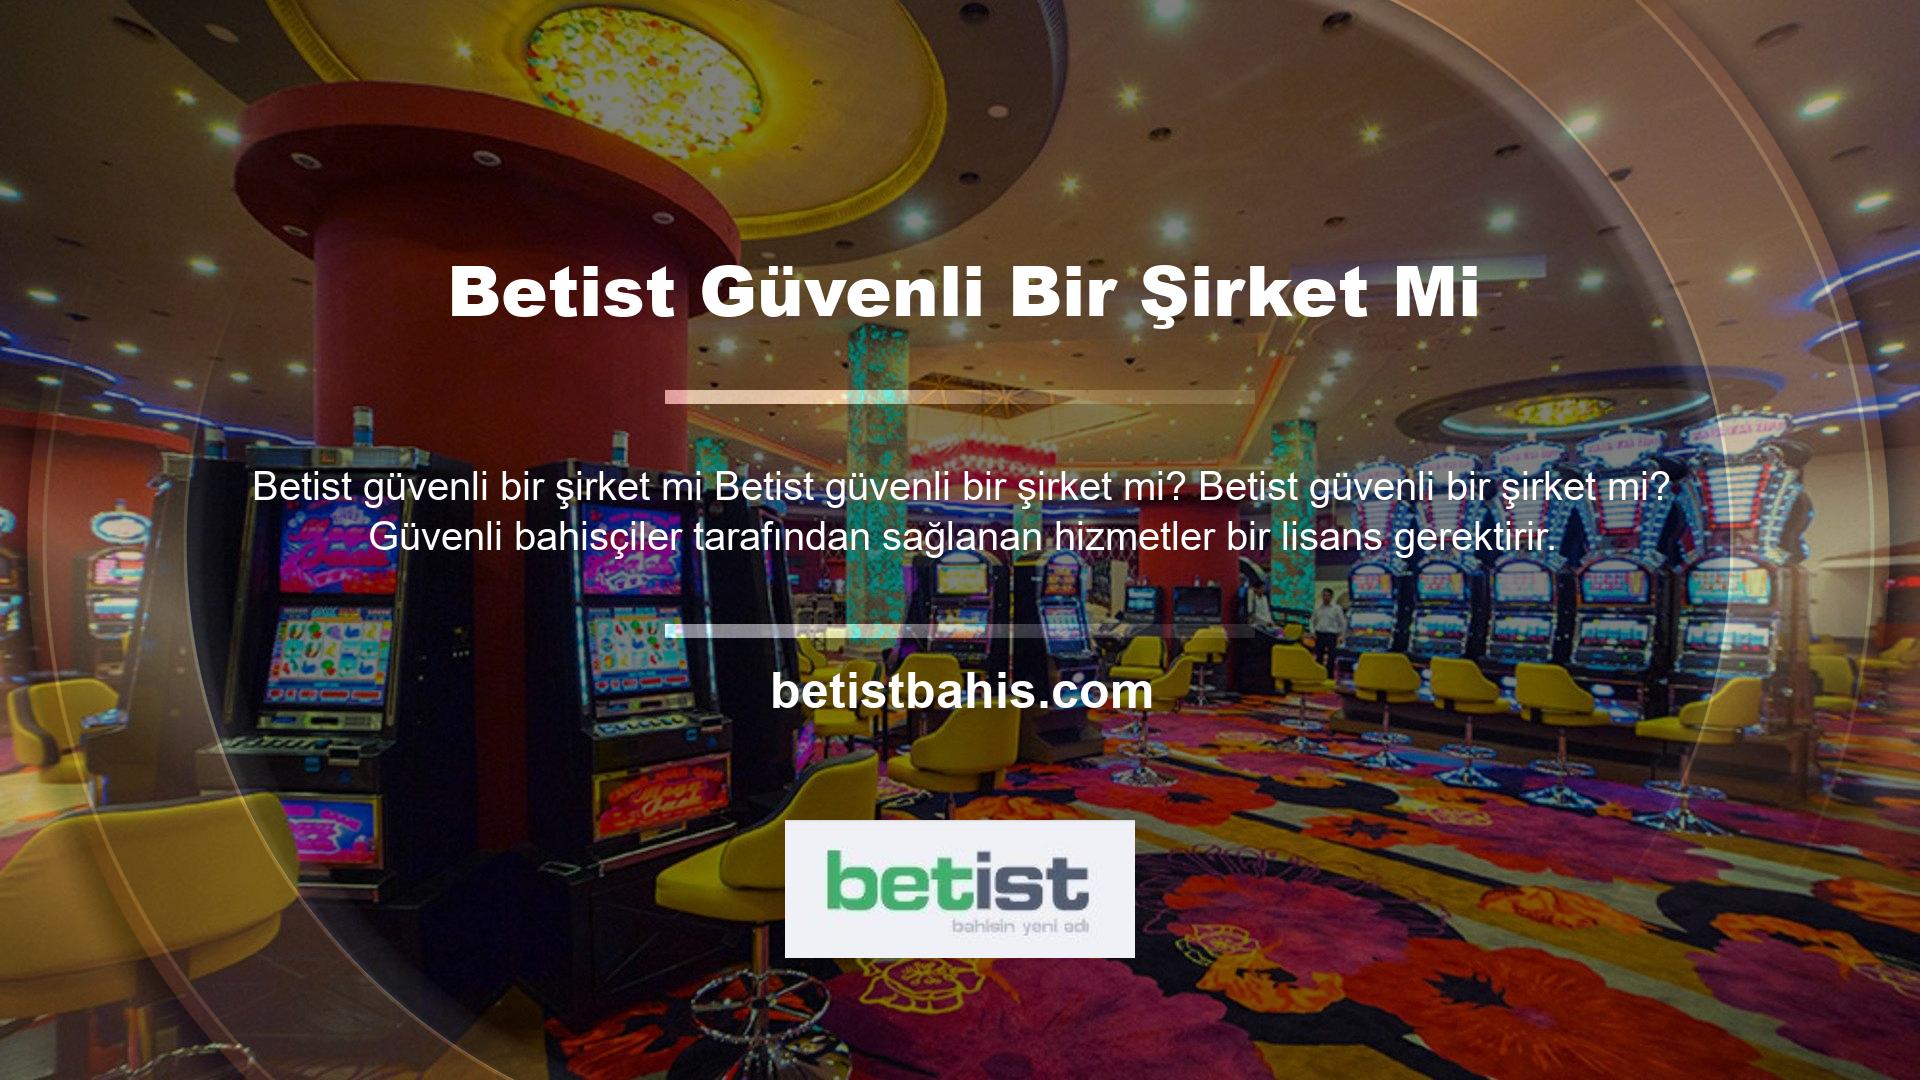 Casino meraklıları, Betist casino sitelerinin güvenilirliğinin bir lisansla desteklendiğini göreceklerdir